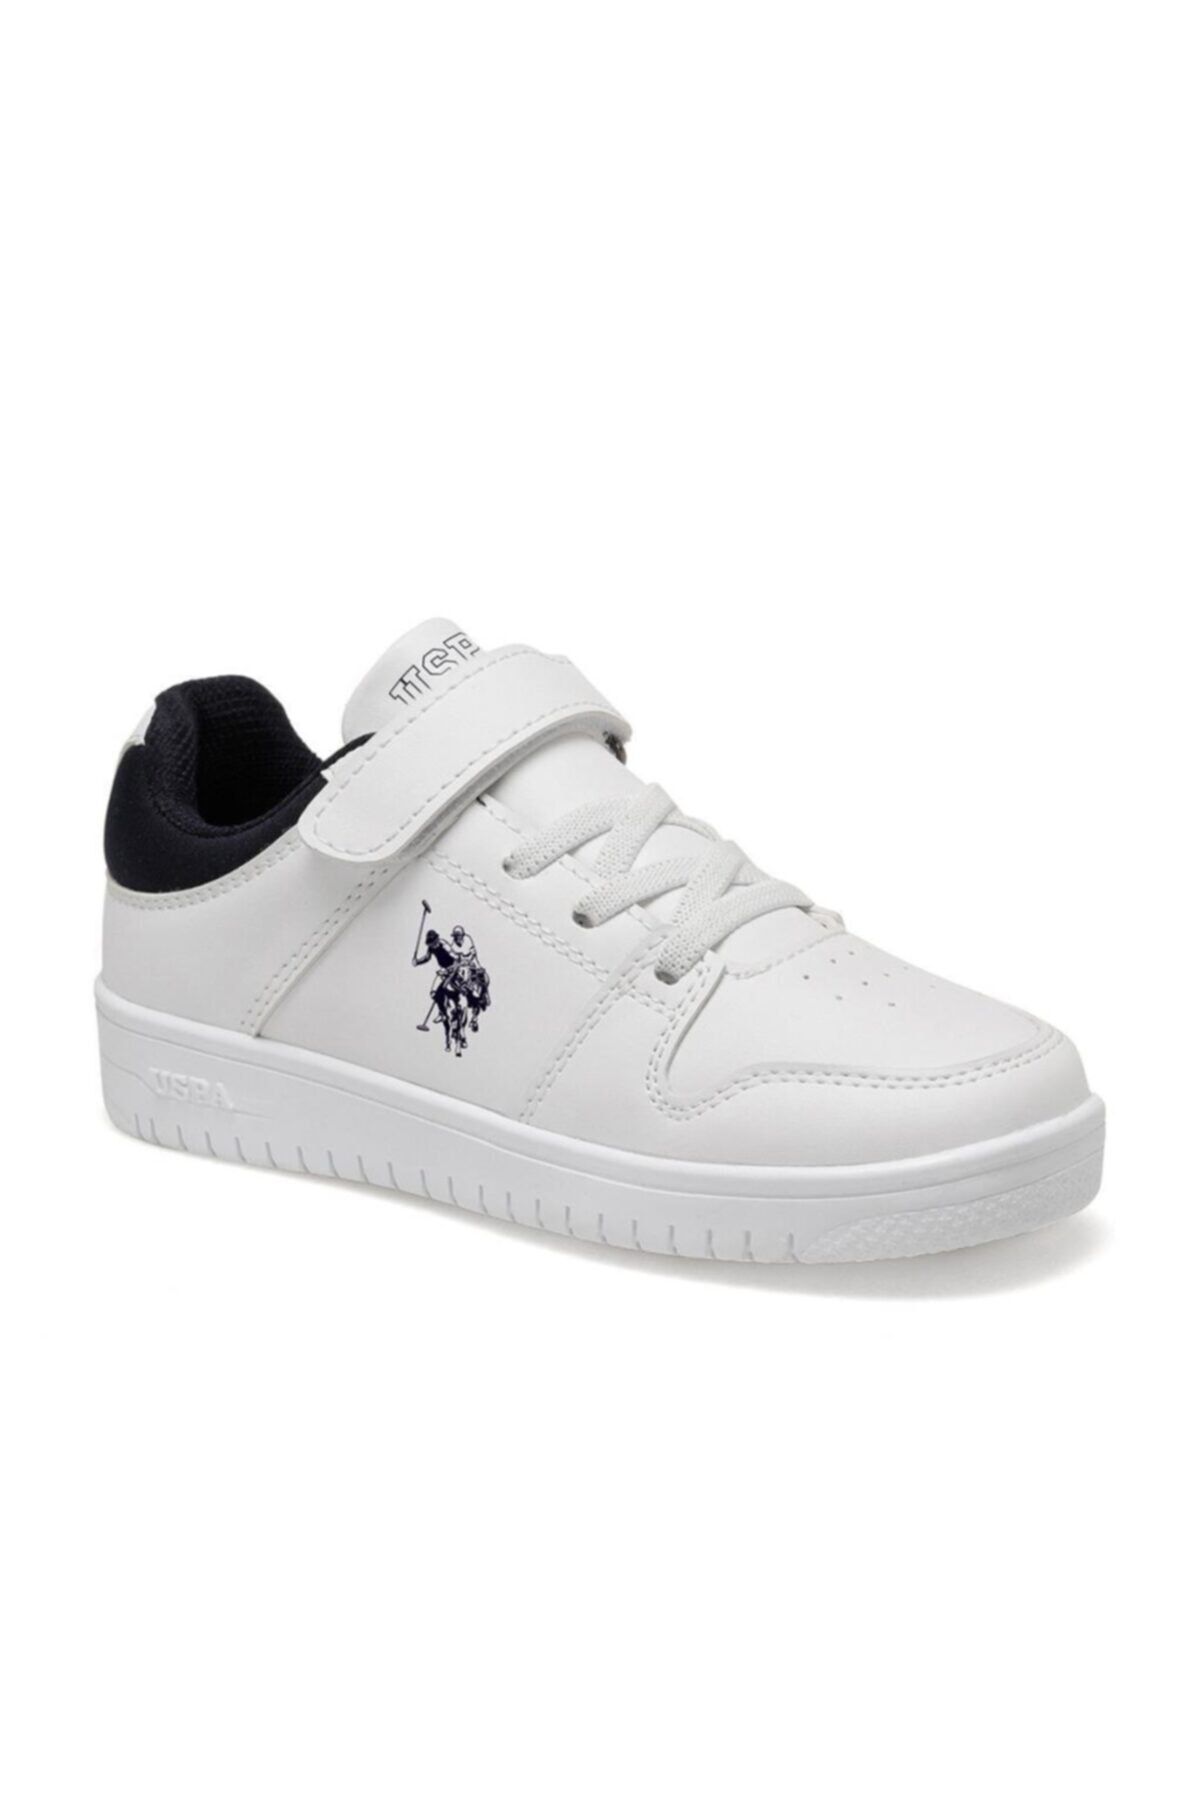 Polo DOUGLAS Beyaz Erkek Çocuk Sneaker Ayakkabı 100489474